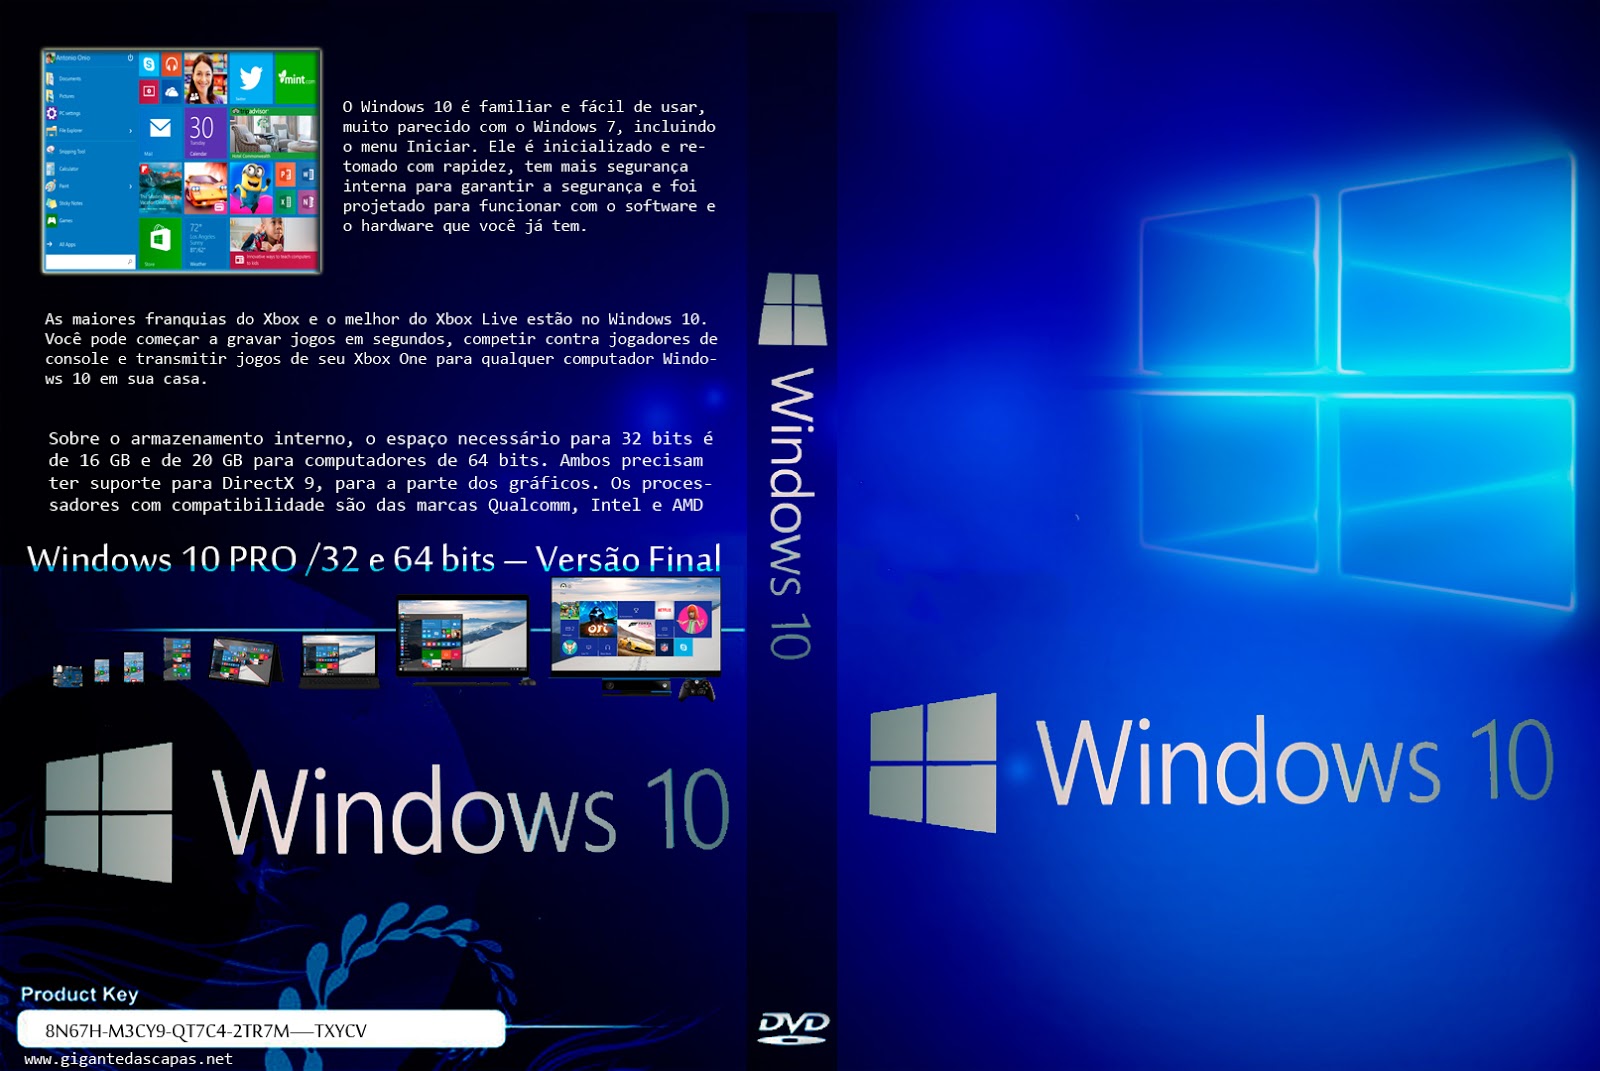 Скачать windows 8.1 оригинальный образ от microsoft